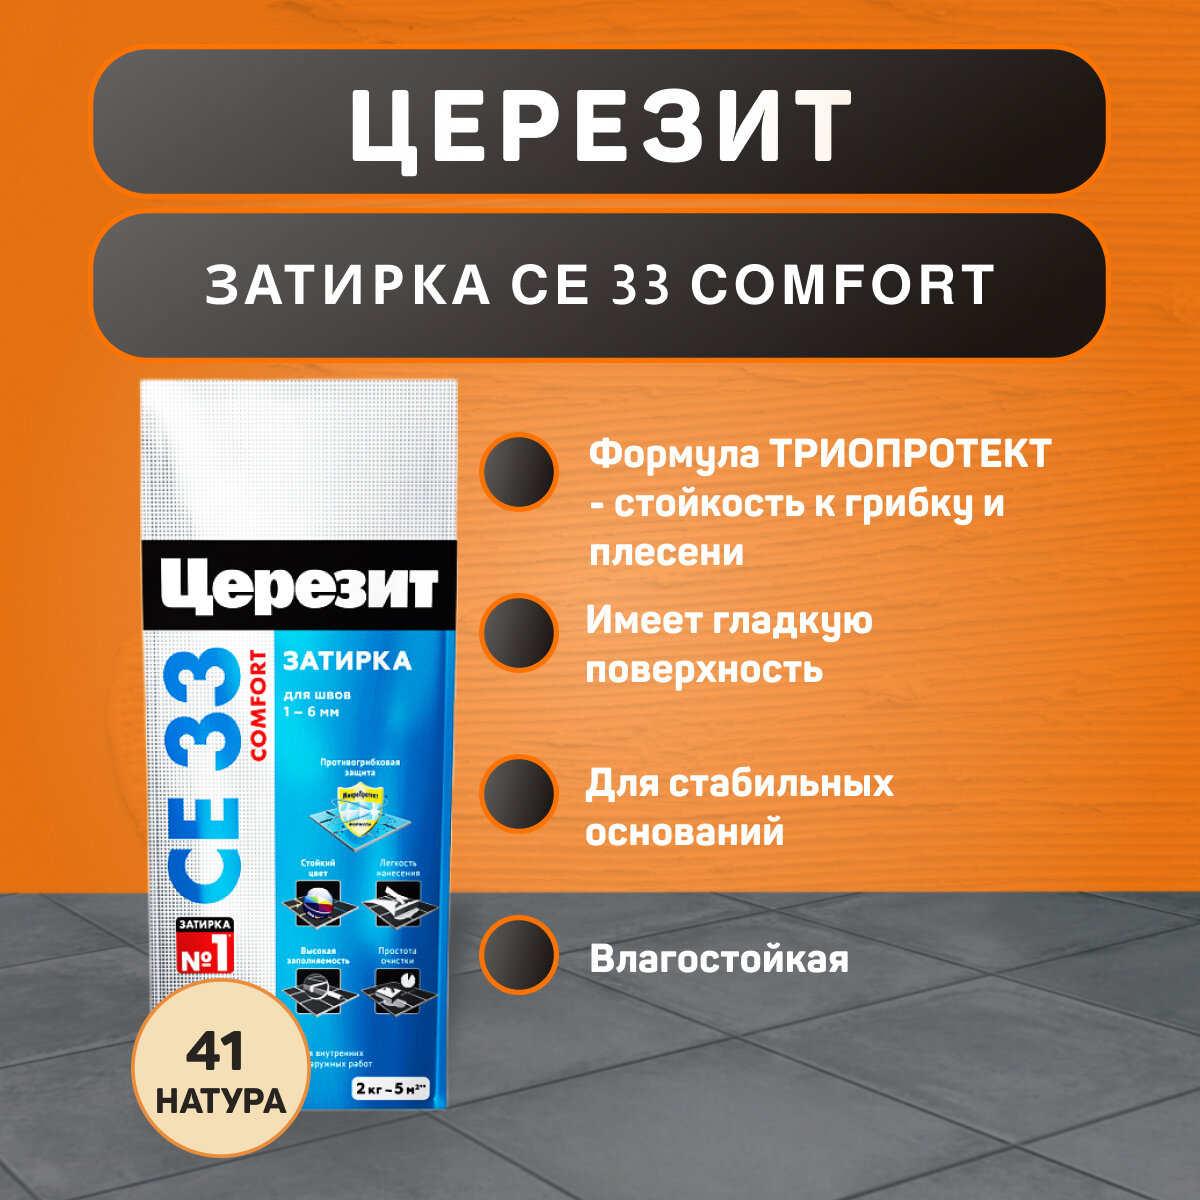 Затирка Ceresit CE 33 Comfort №41 натура 2 кг